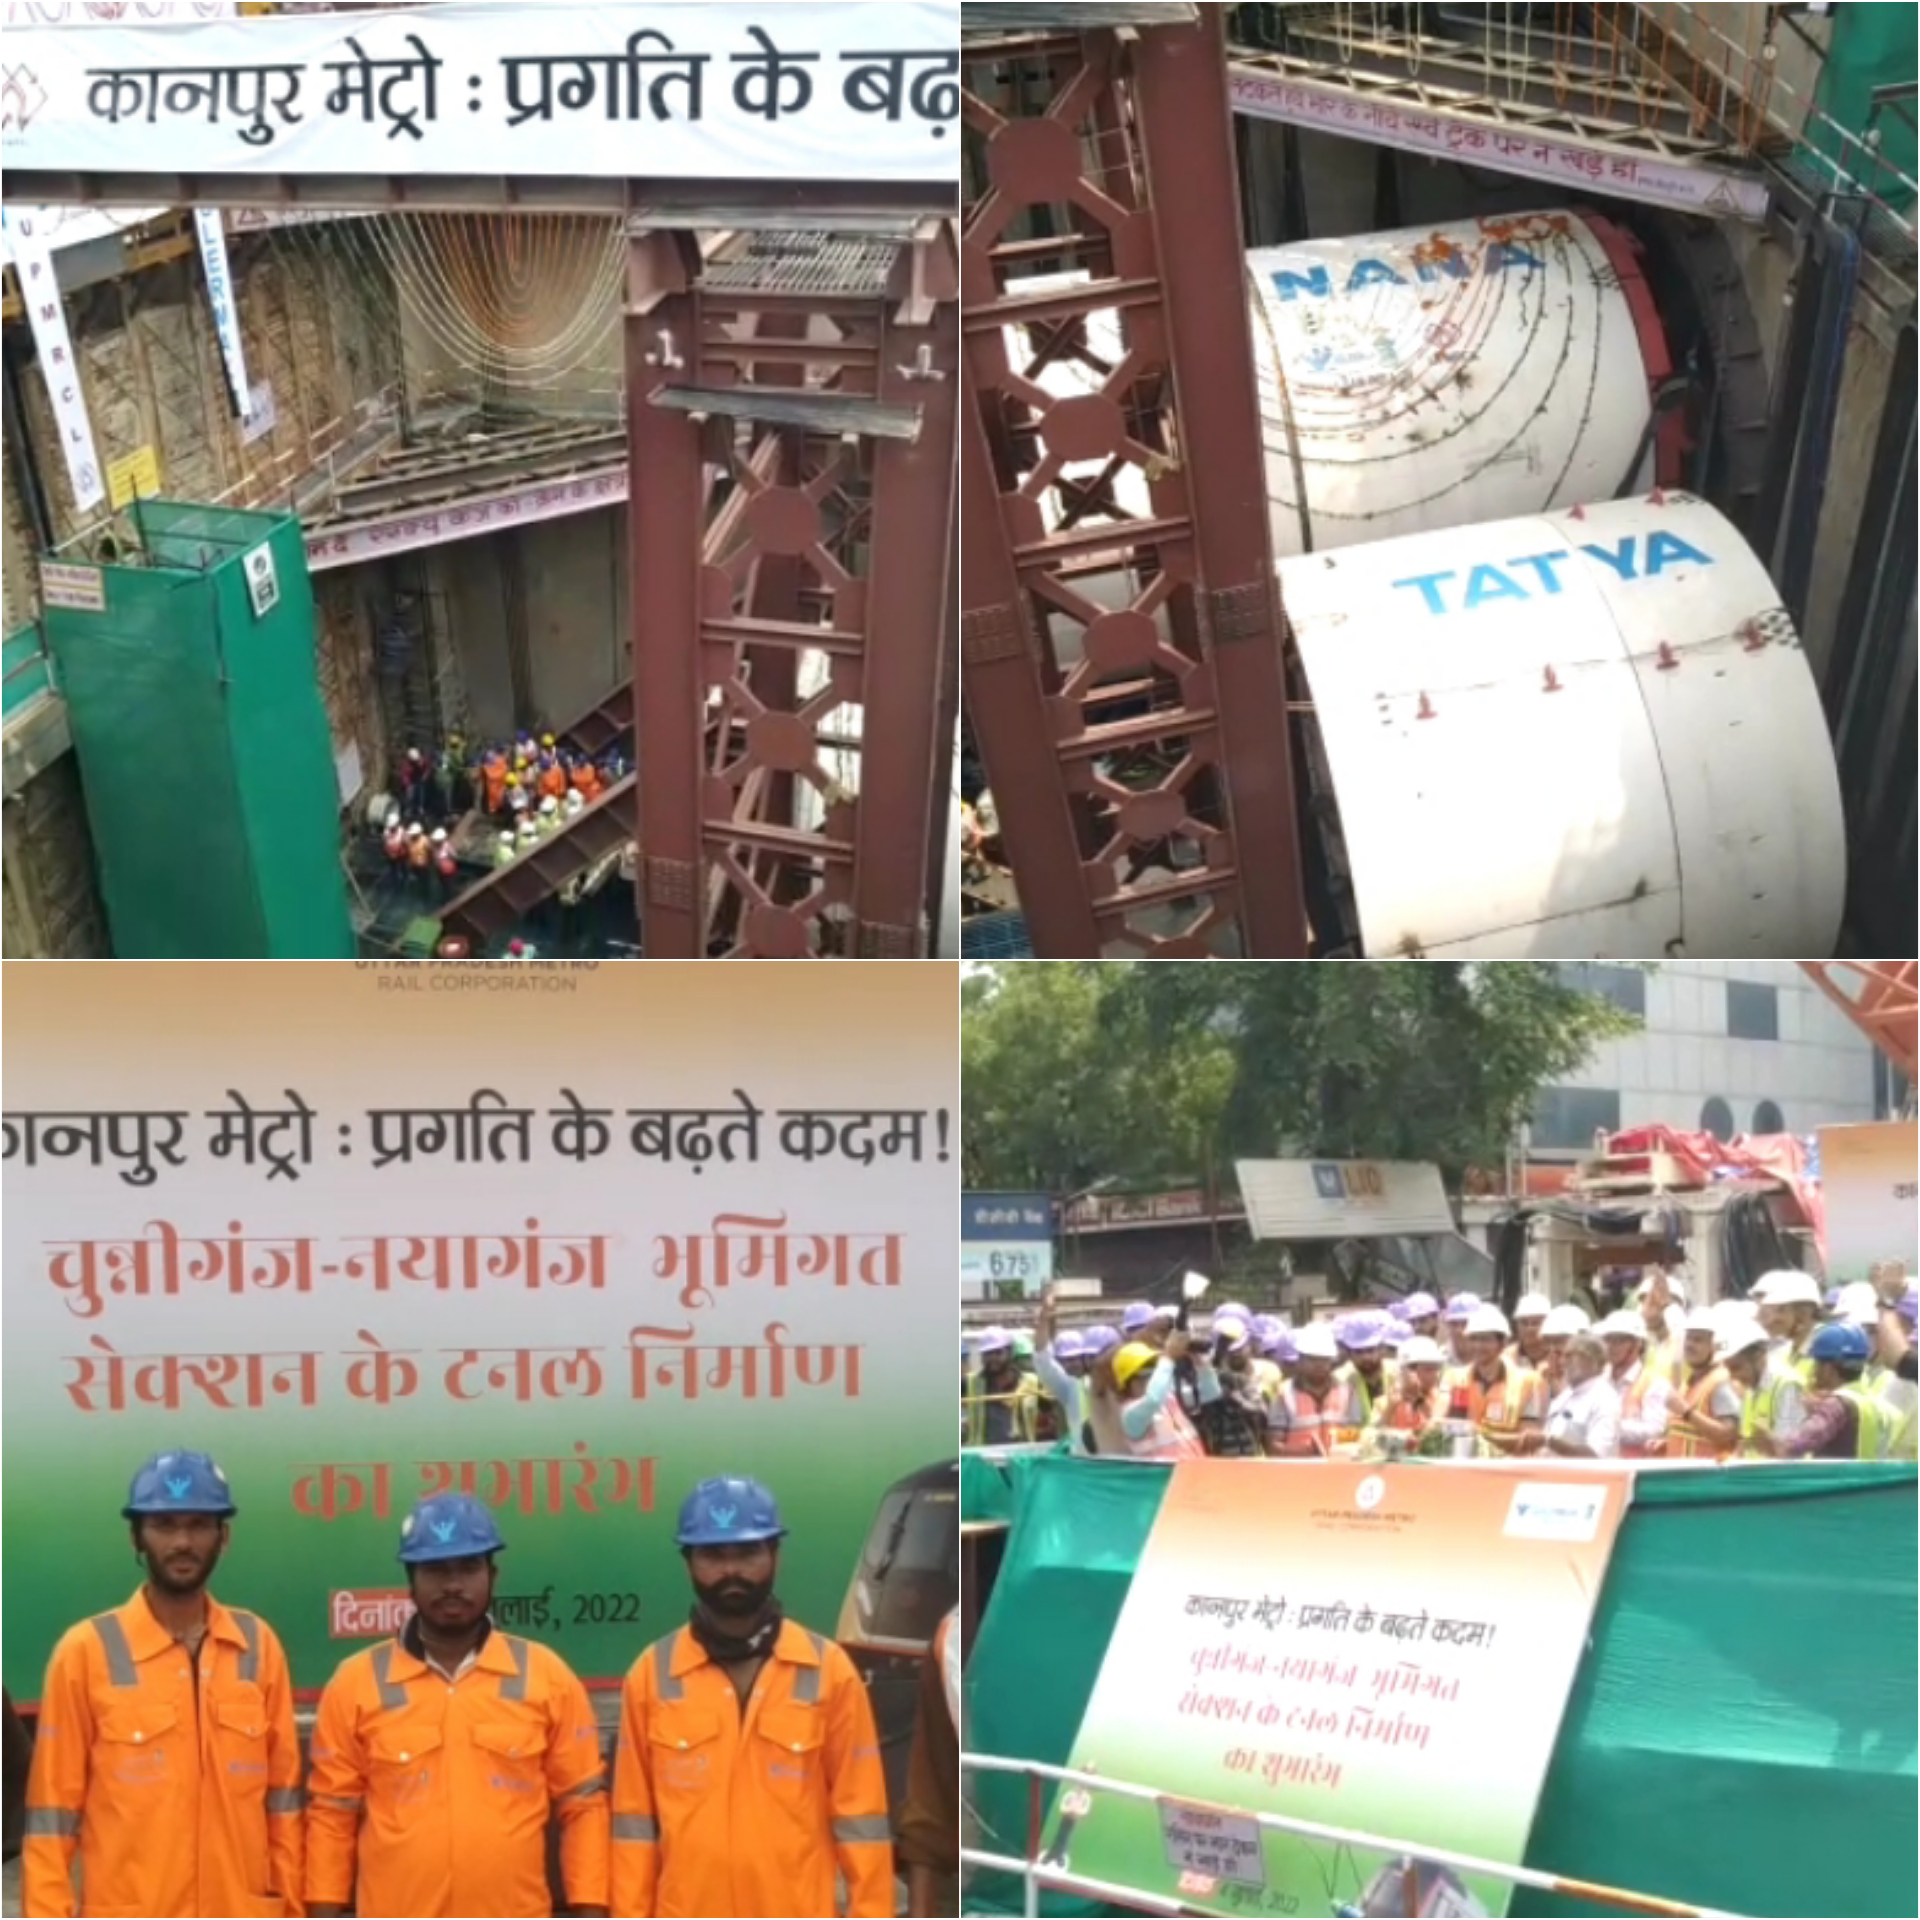 कानपुर मेट्रो: टनल बनाने का काम शुरू, देश को समर्पित करने के विषय में मिली ये जानकारी